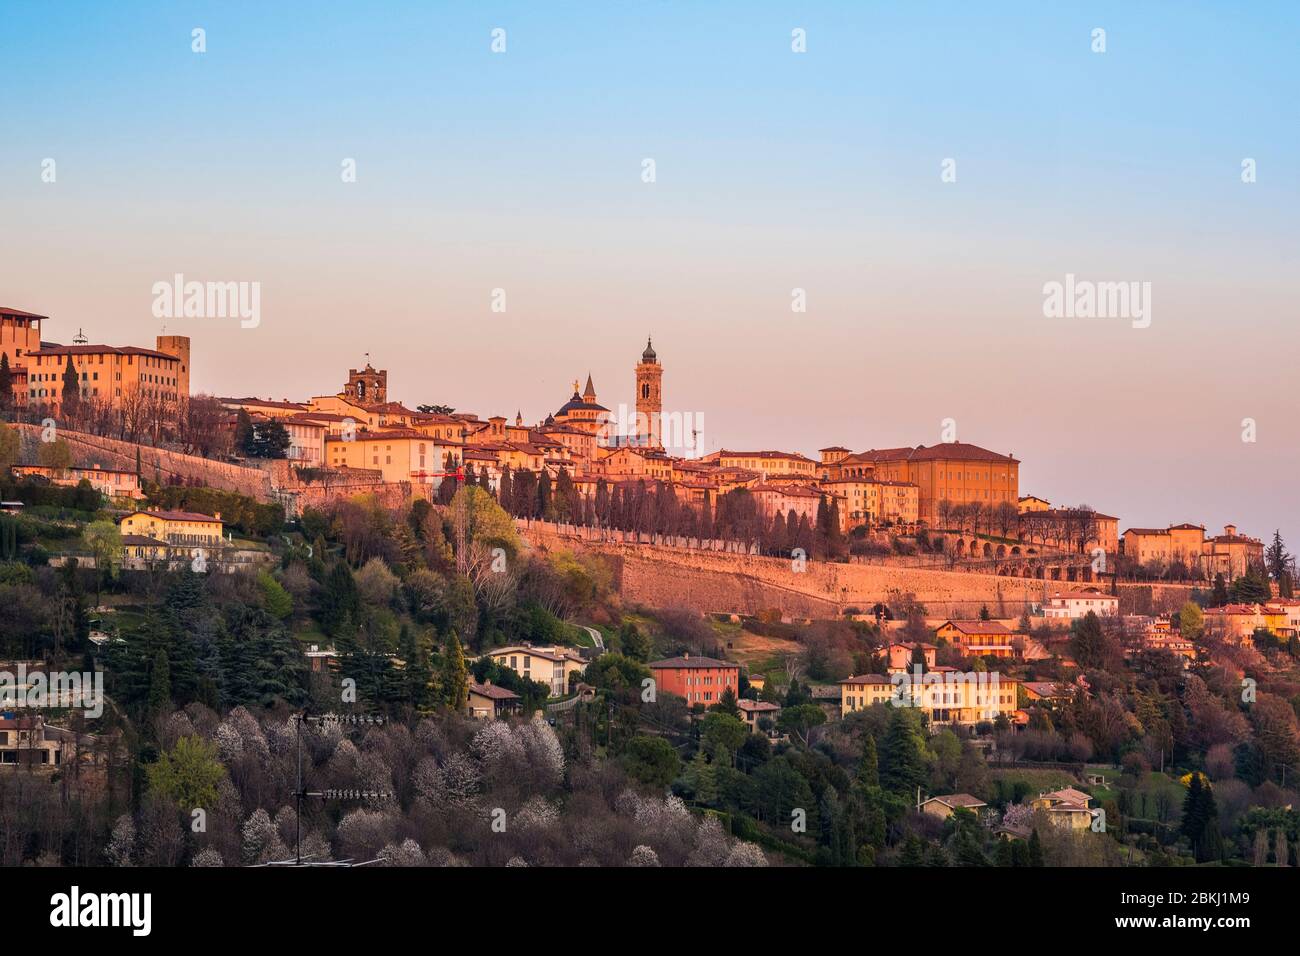 Italy, Lombardy, Bergamo, the Citta Alta (upper town), the Basilica of Santa Maria Maggiore Stock Photo